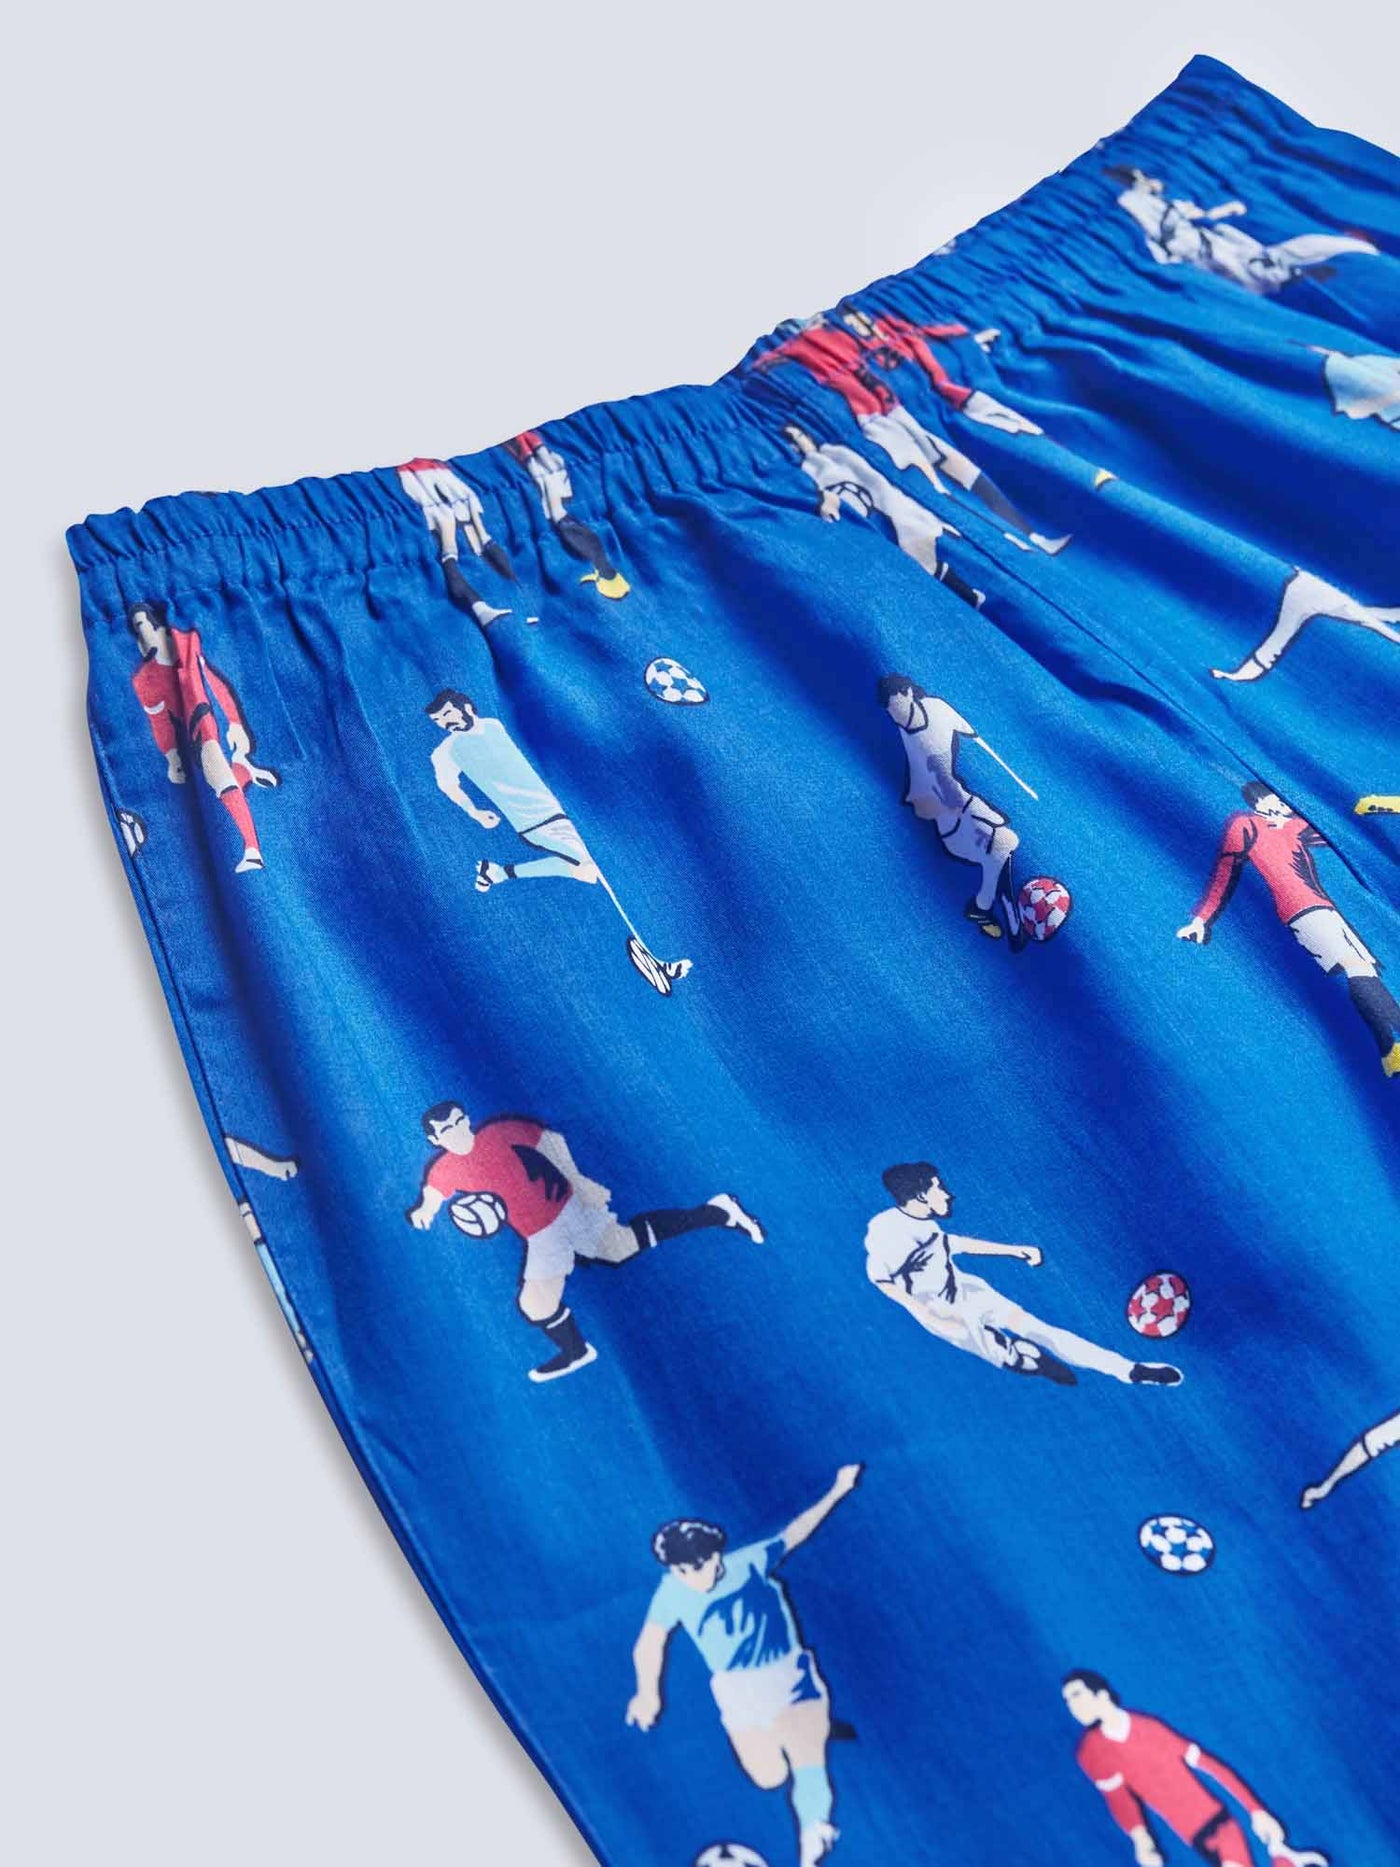 Football Adult Pajama